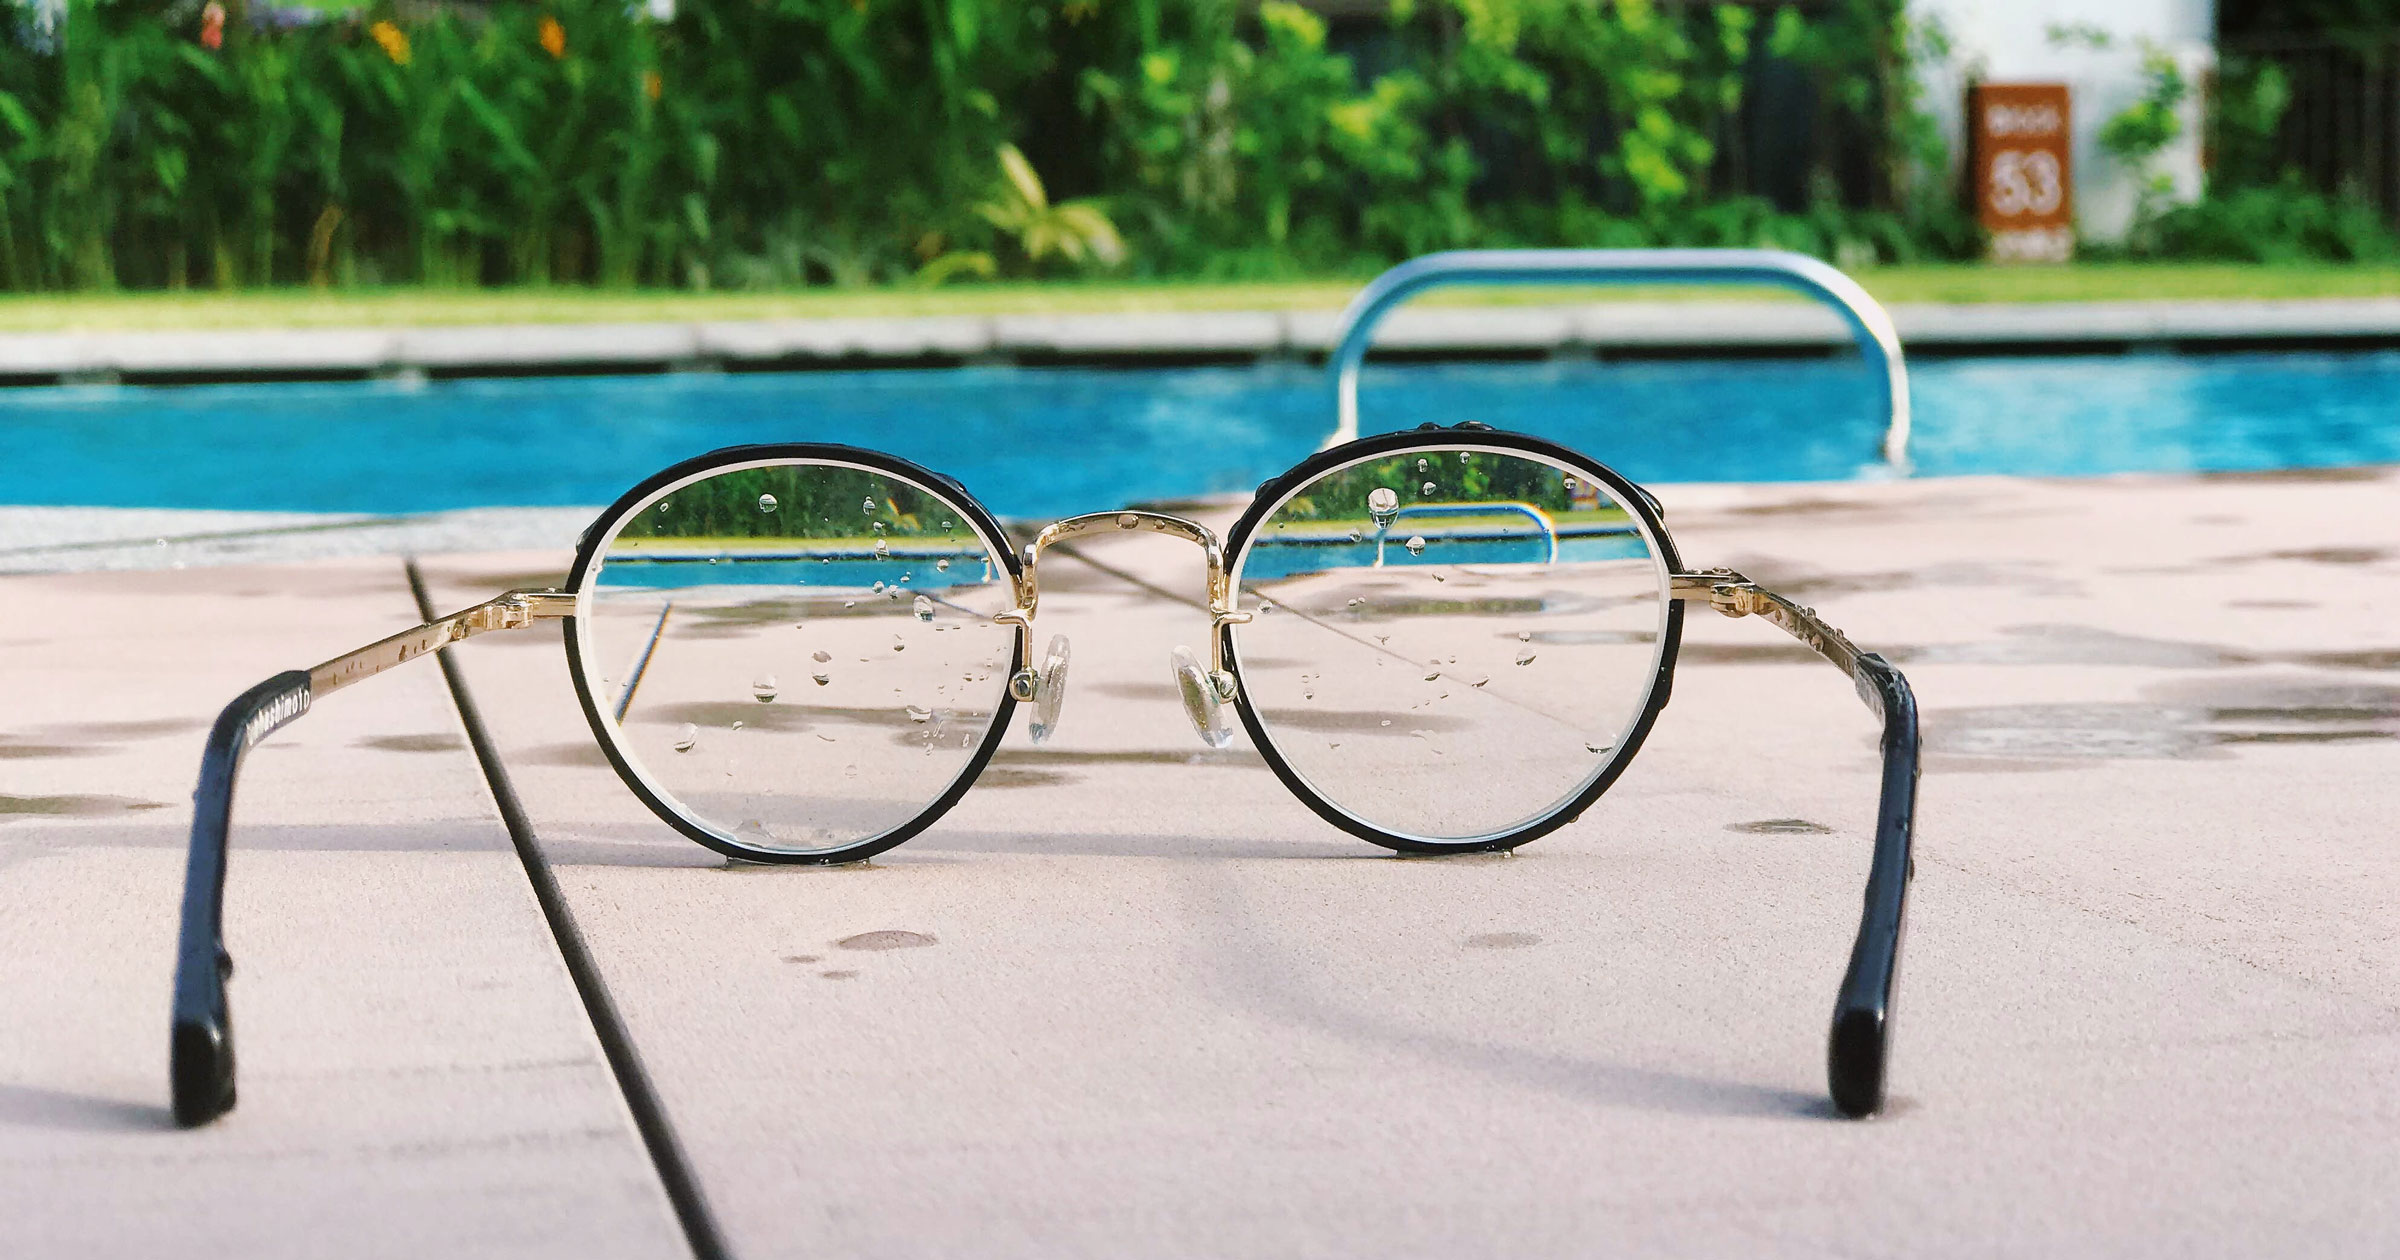 Unique Lens glasses on pool